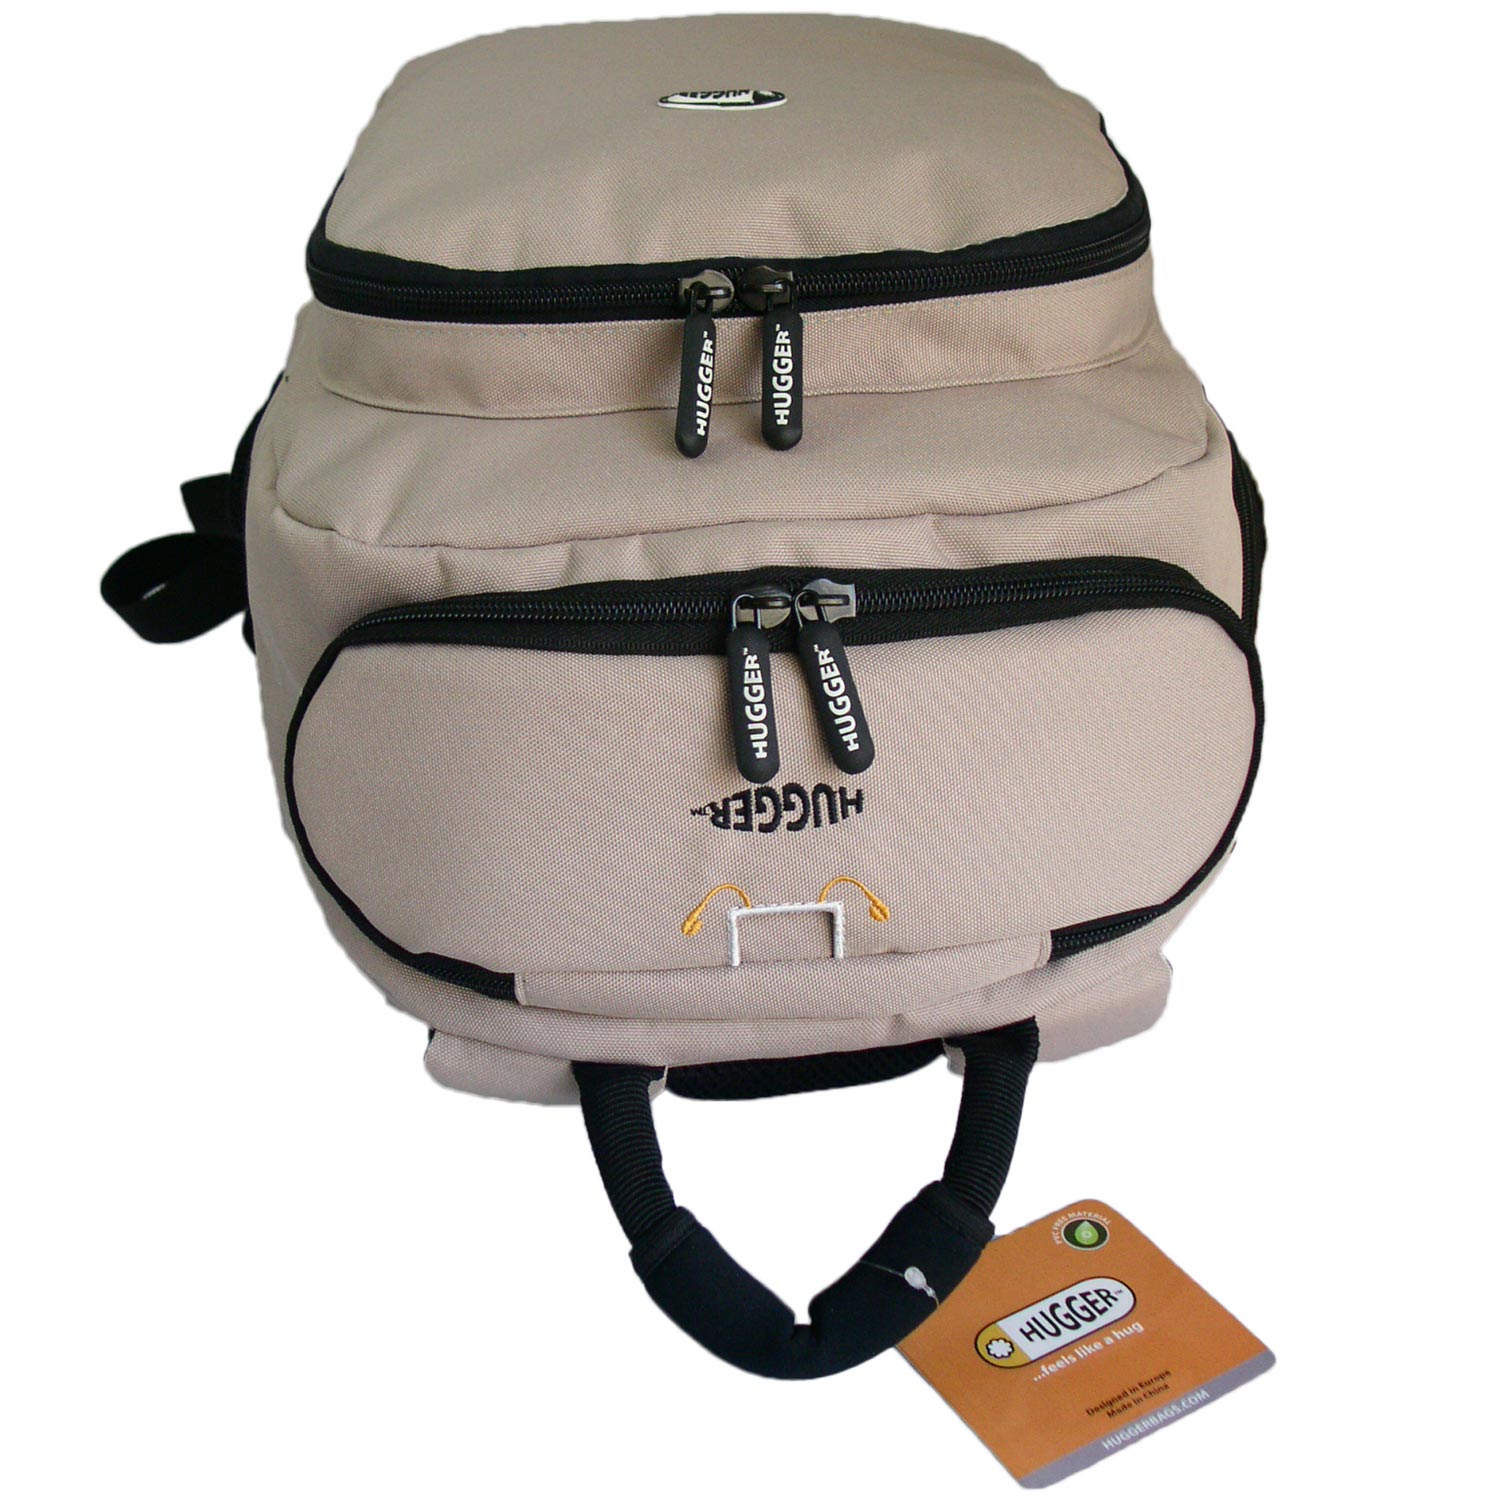 Der Hugger Rucksack besteht aus wasserabweisendem Material und bietet Polsterung und Komplettschutz für Laptops und Zubehör.